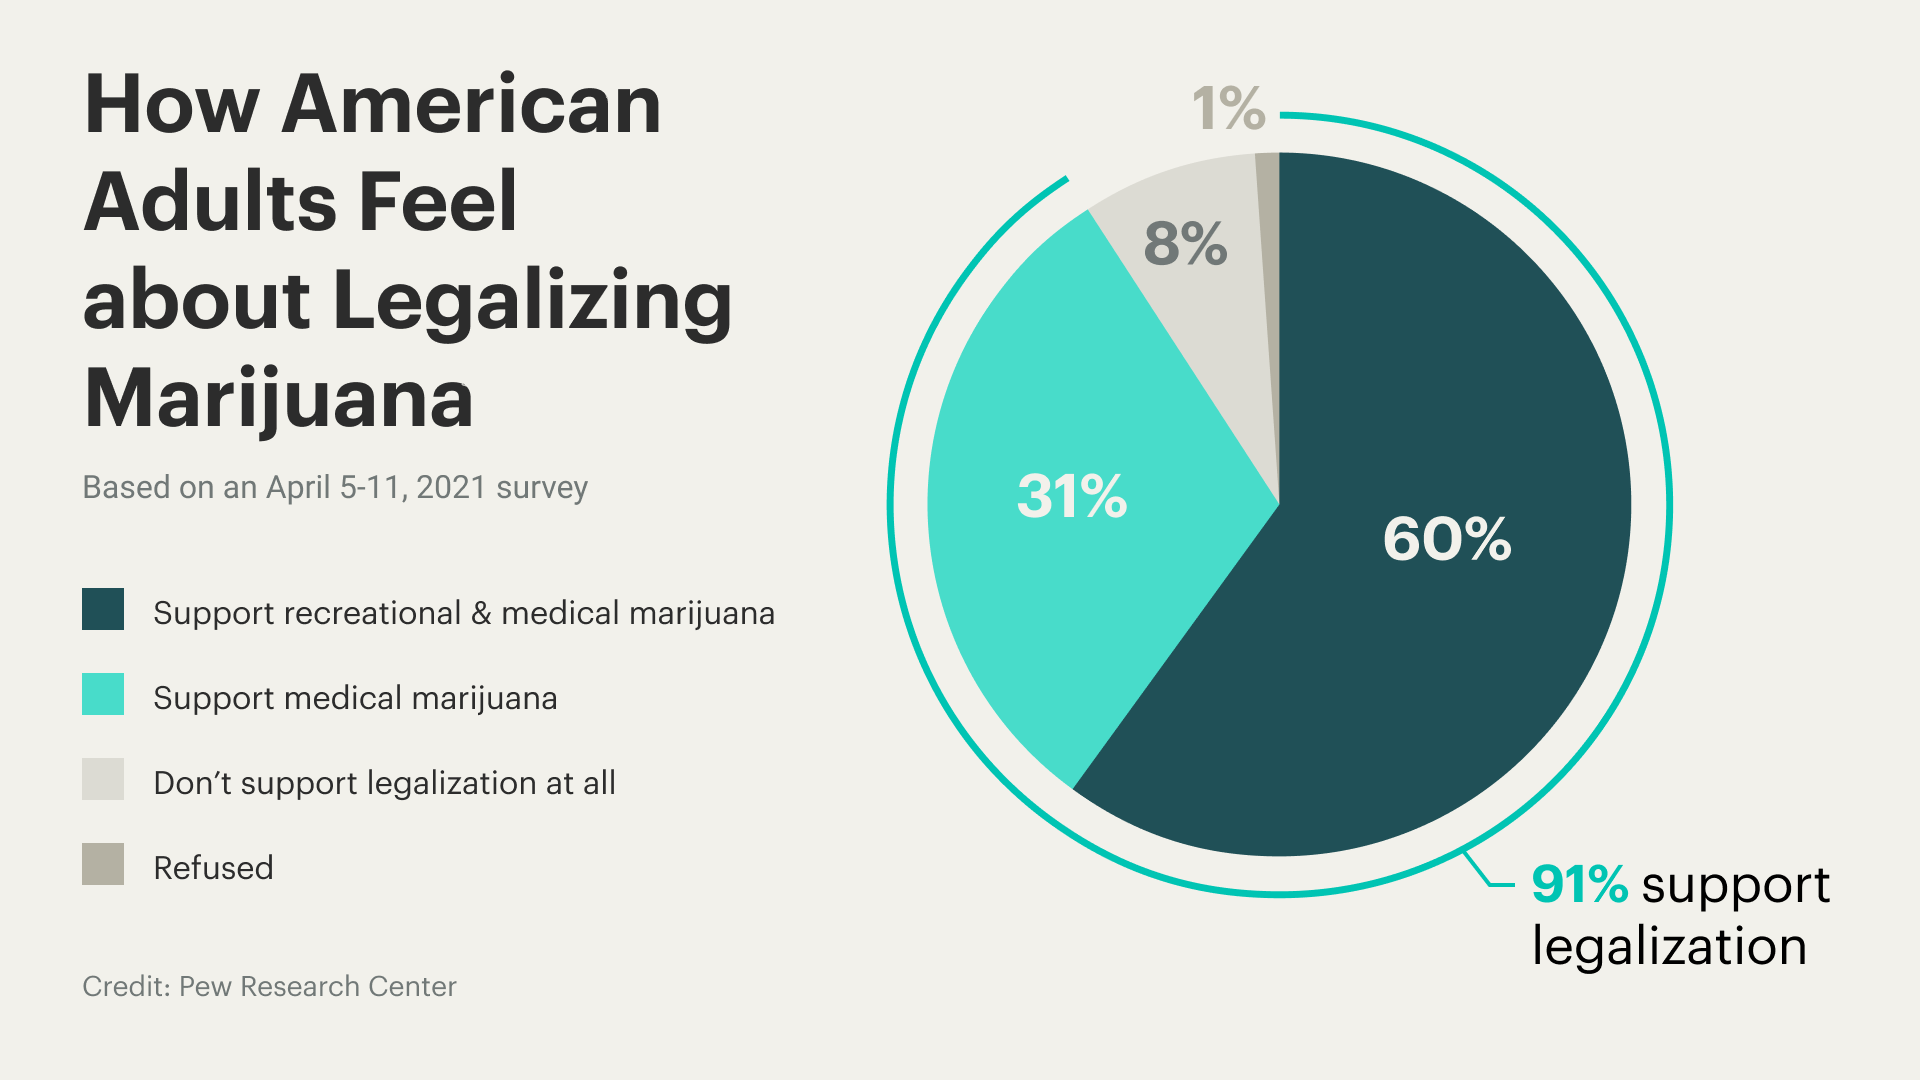 argumentative essay on why marijuana should be legalized